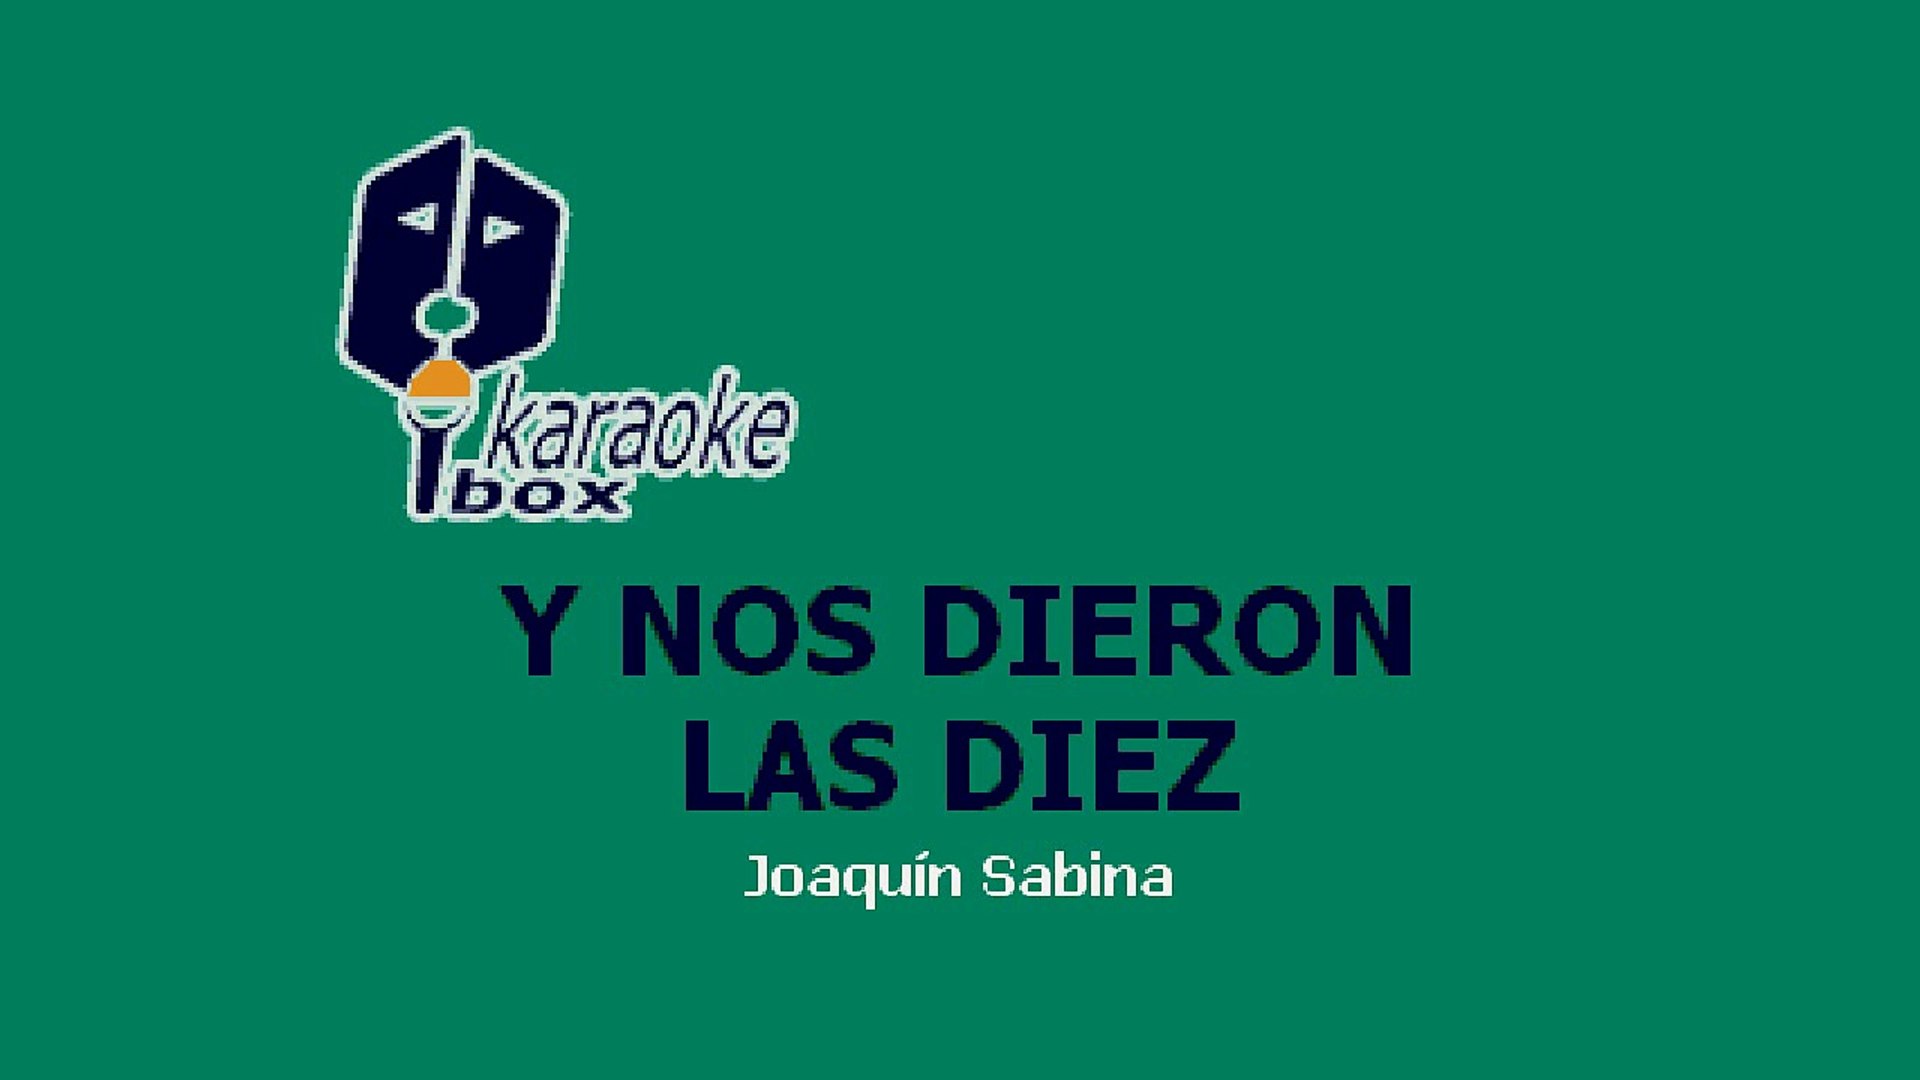 Karaoke Box - Y Nos Dieron Las Diez (Al Estilo De Joaquín Sabina) - (Karaoke)  - video Dailymotion